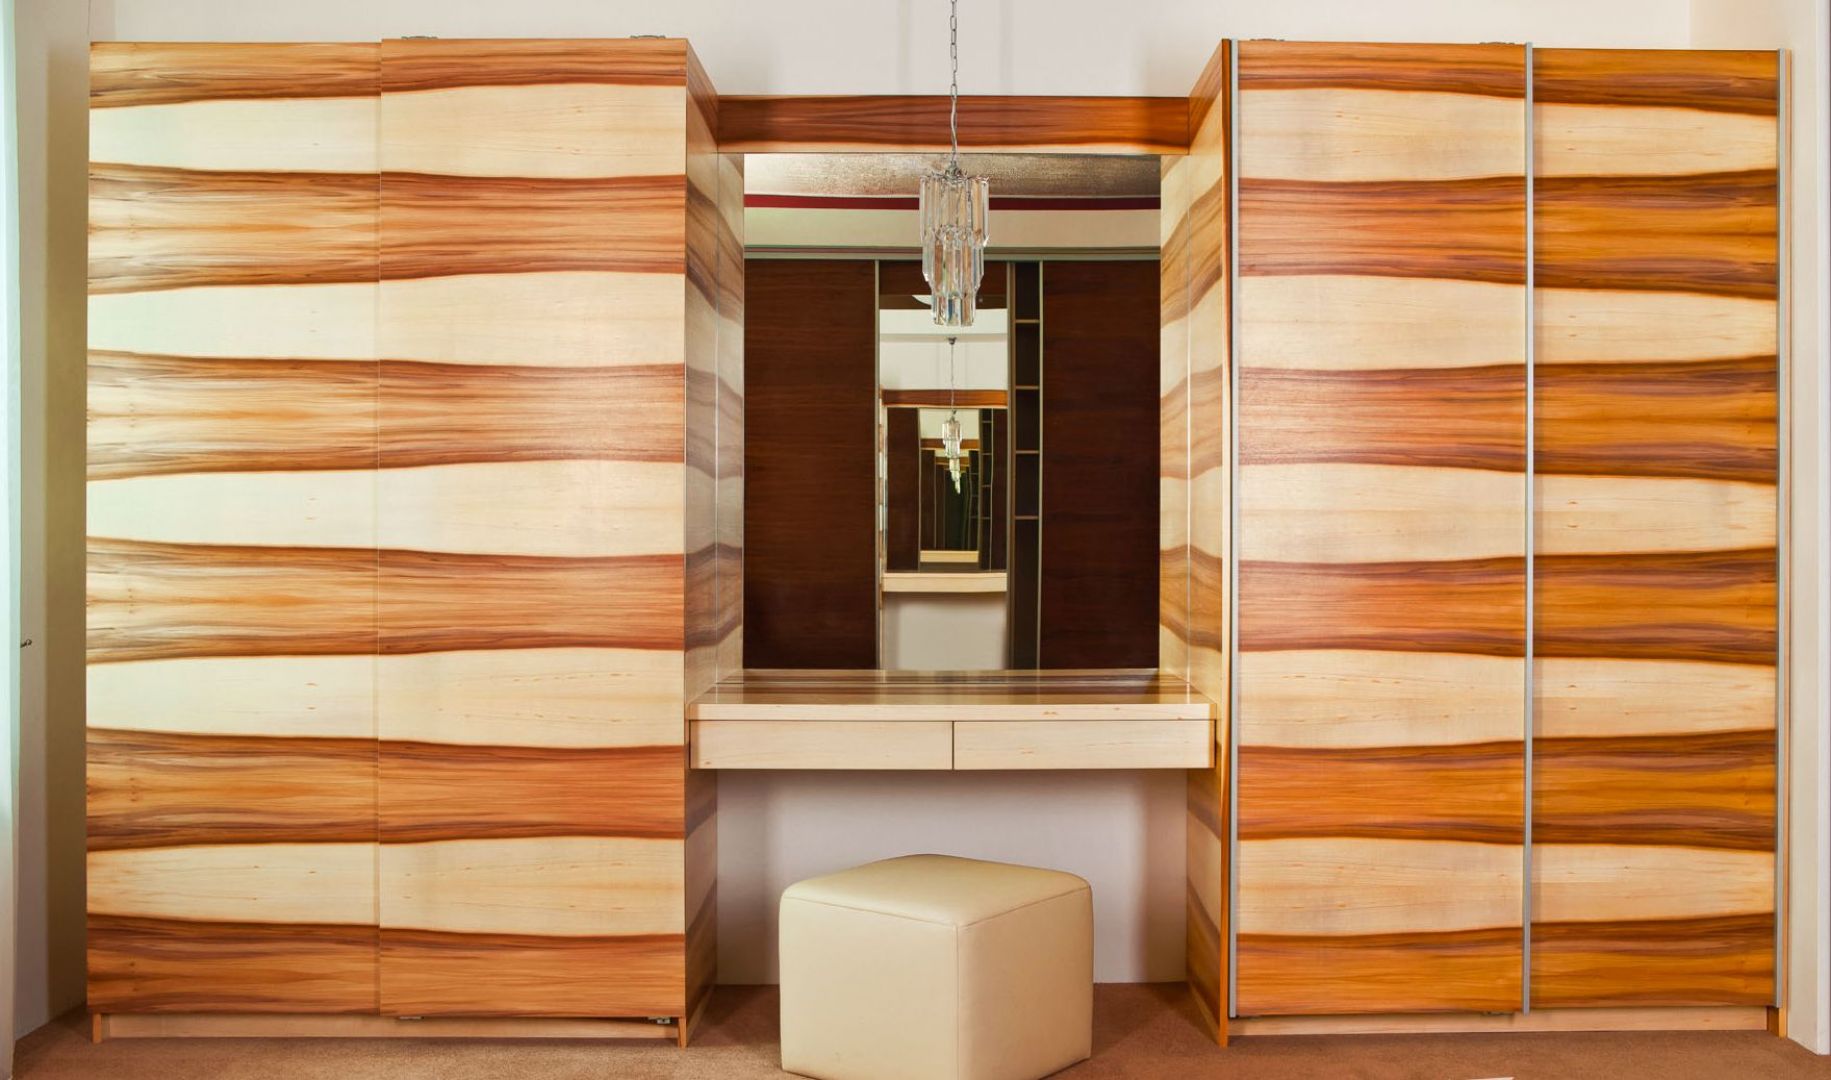 Wykonawcy projektujący szafy na wymiar oferują wypełnienia frontów imitujące różne gatunki drewna – od krajowych po egzotyczne. Fot. Sevroll